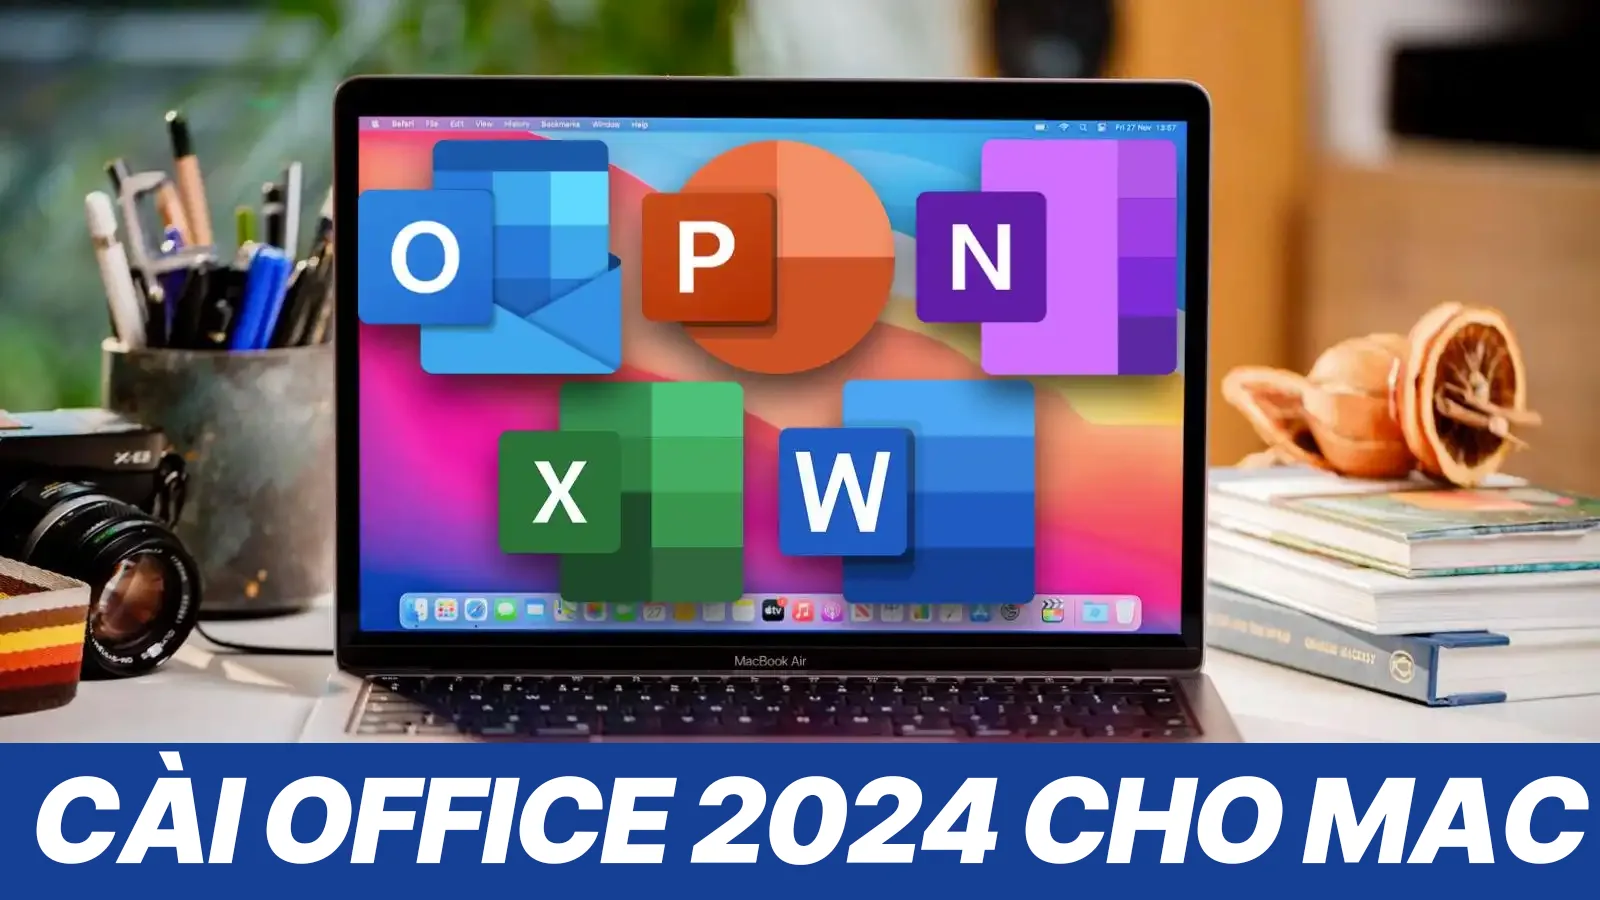 Cai Office 2024 cho Mac mien phi